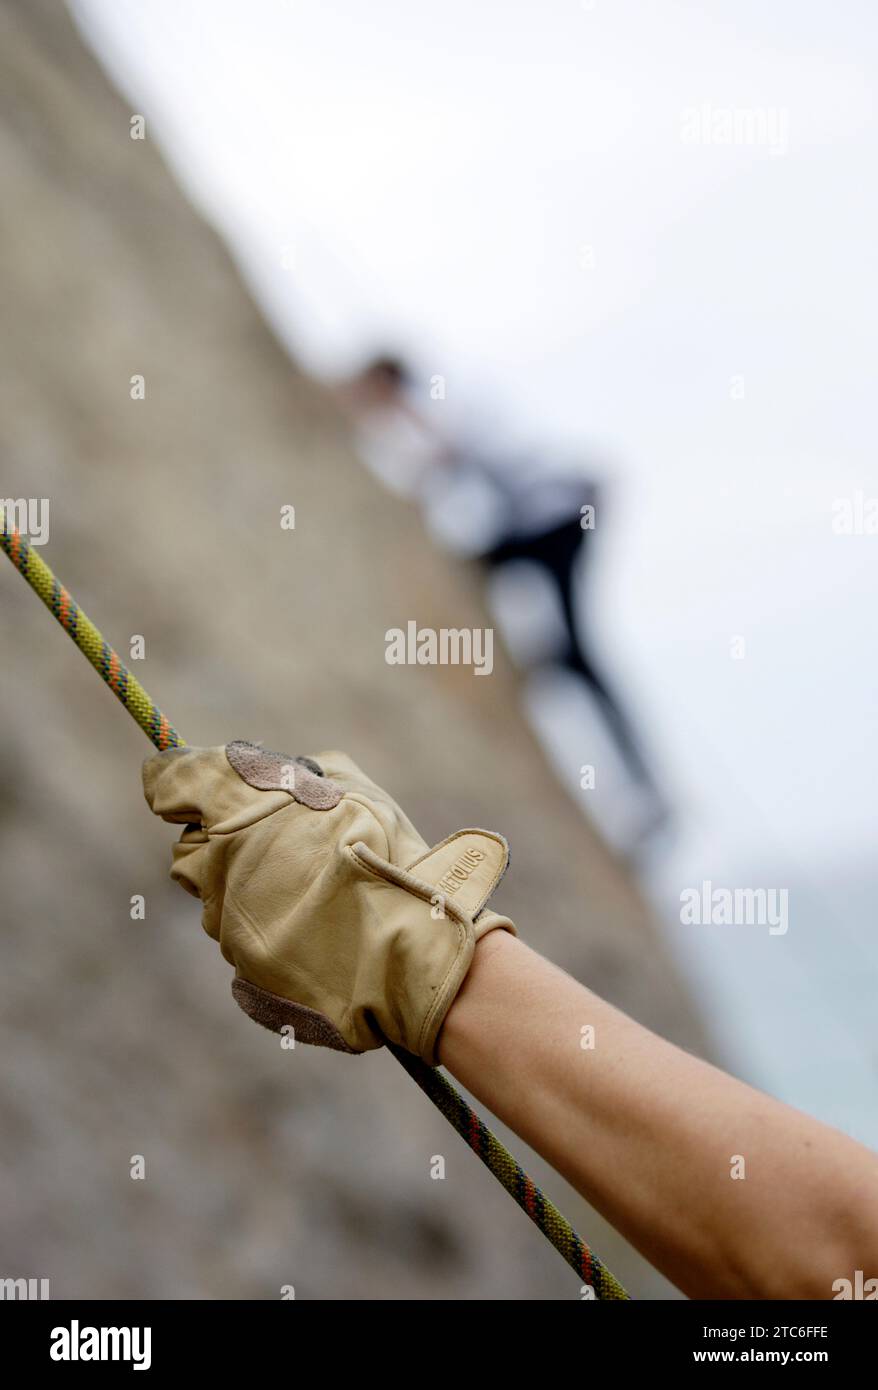 Eine Hand greift ein Seil, während eine Person im Hintergrund eine Felswand in Malibu, Kalifornien, bestiegen. (Ausgewählter Fokus) Stockfoto